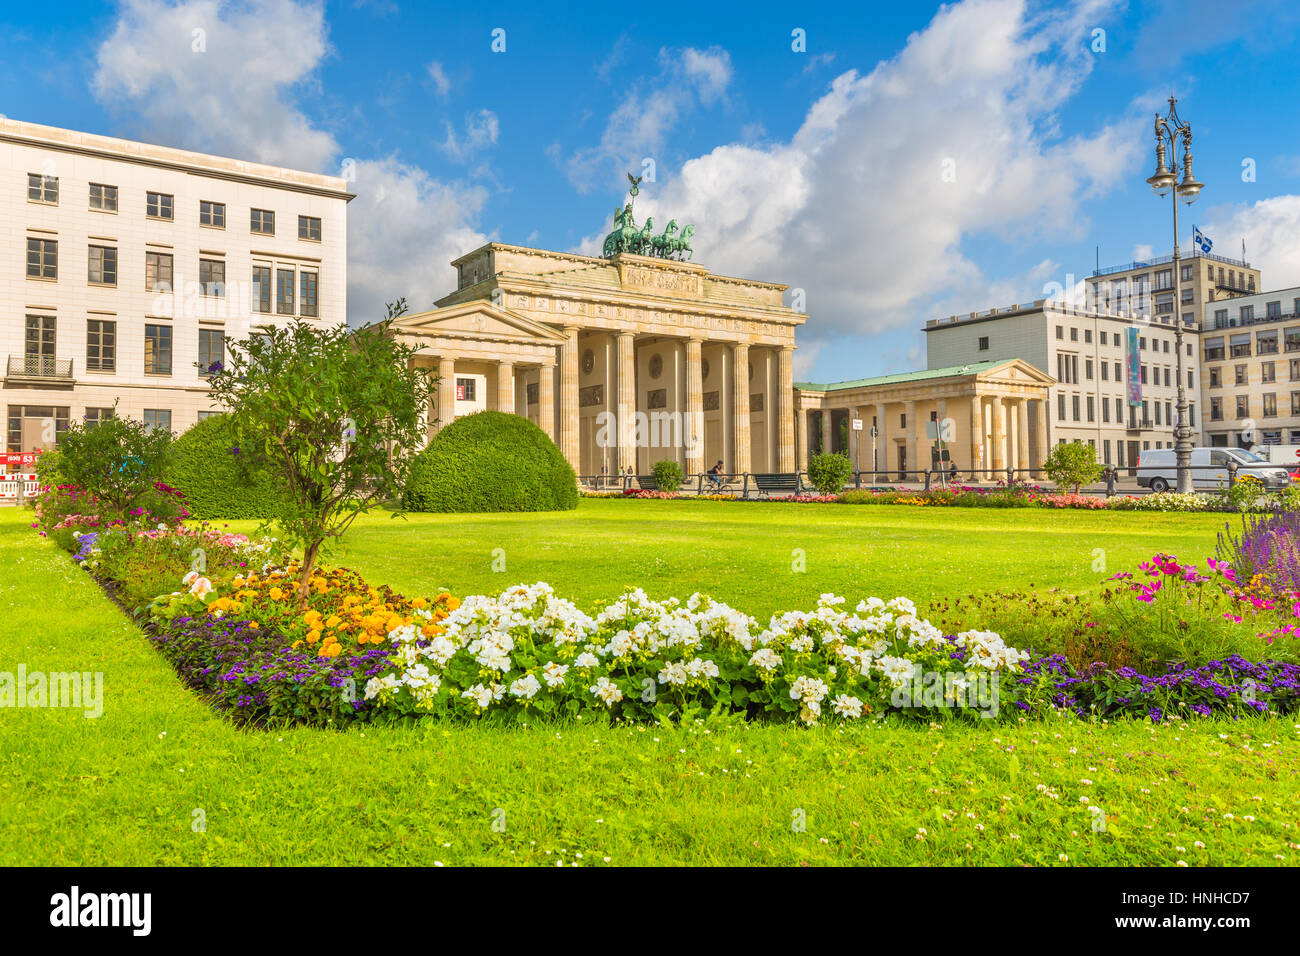 Visualizzazione classica della famosa Porta di Brandeburgo a Pariser Platz, un simbolo nazionale della Germania, in una bella giornata di sole con cielo blu in estate, Berlin Mitte Foto Stock